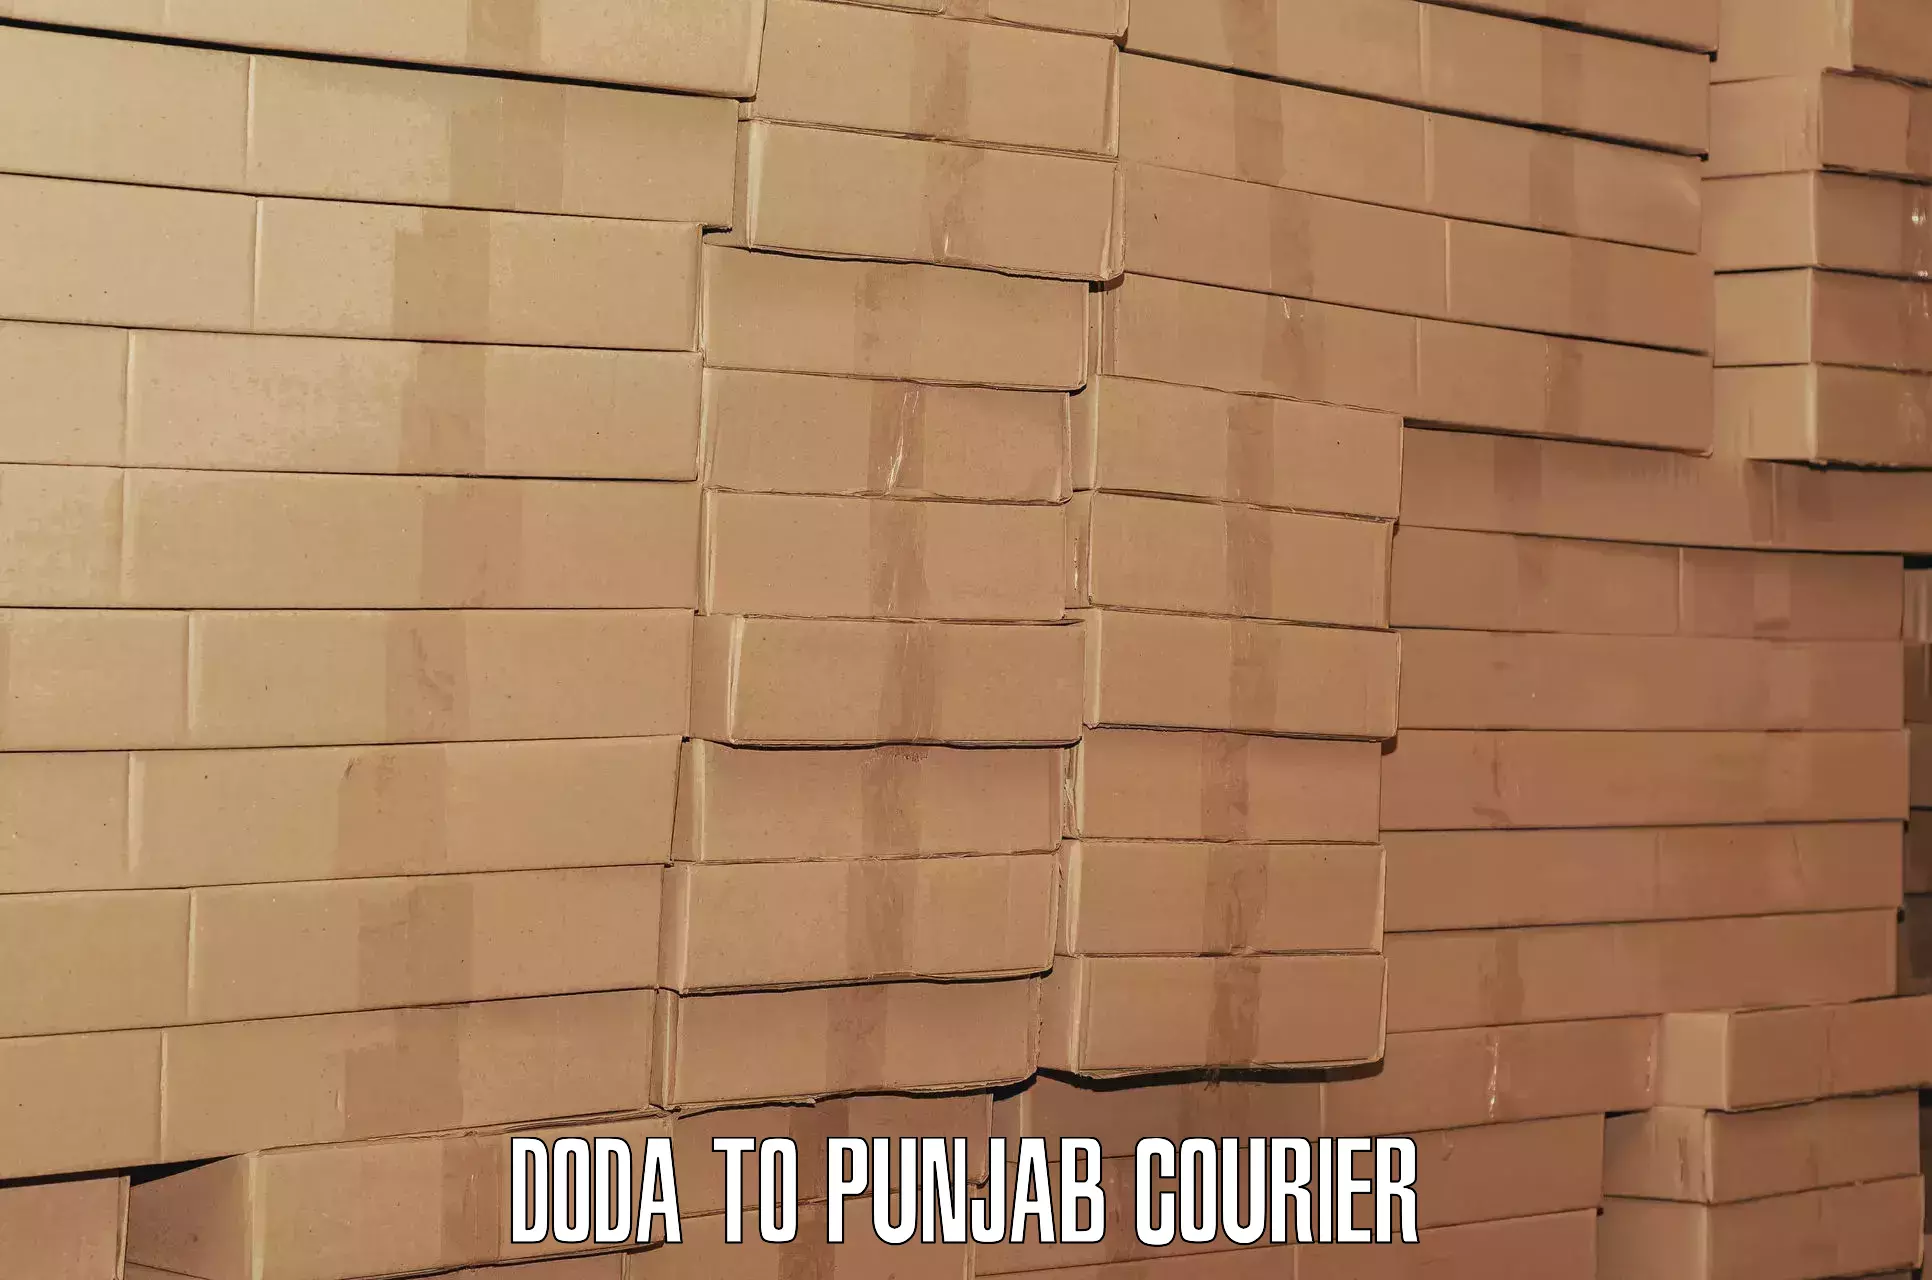 Baggage transport scheduler Doda to Punjab